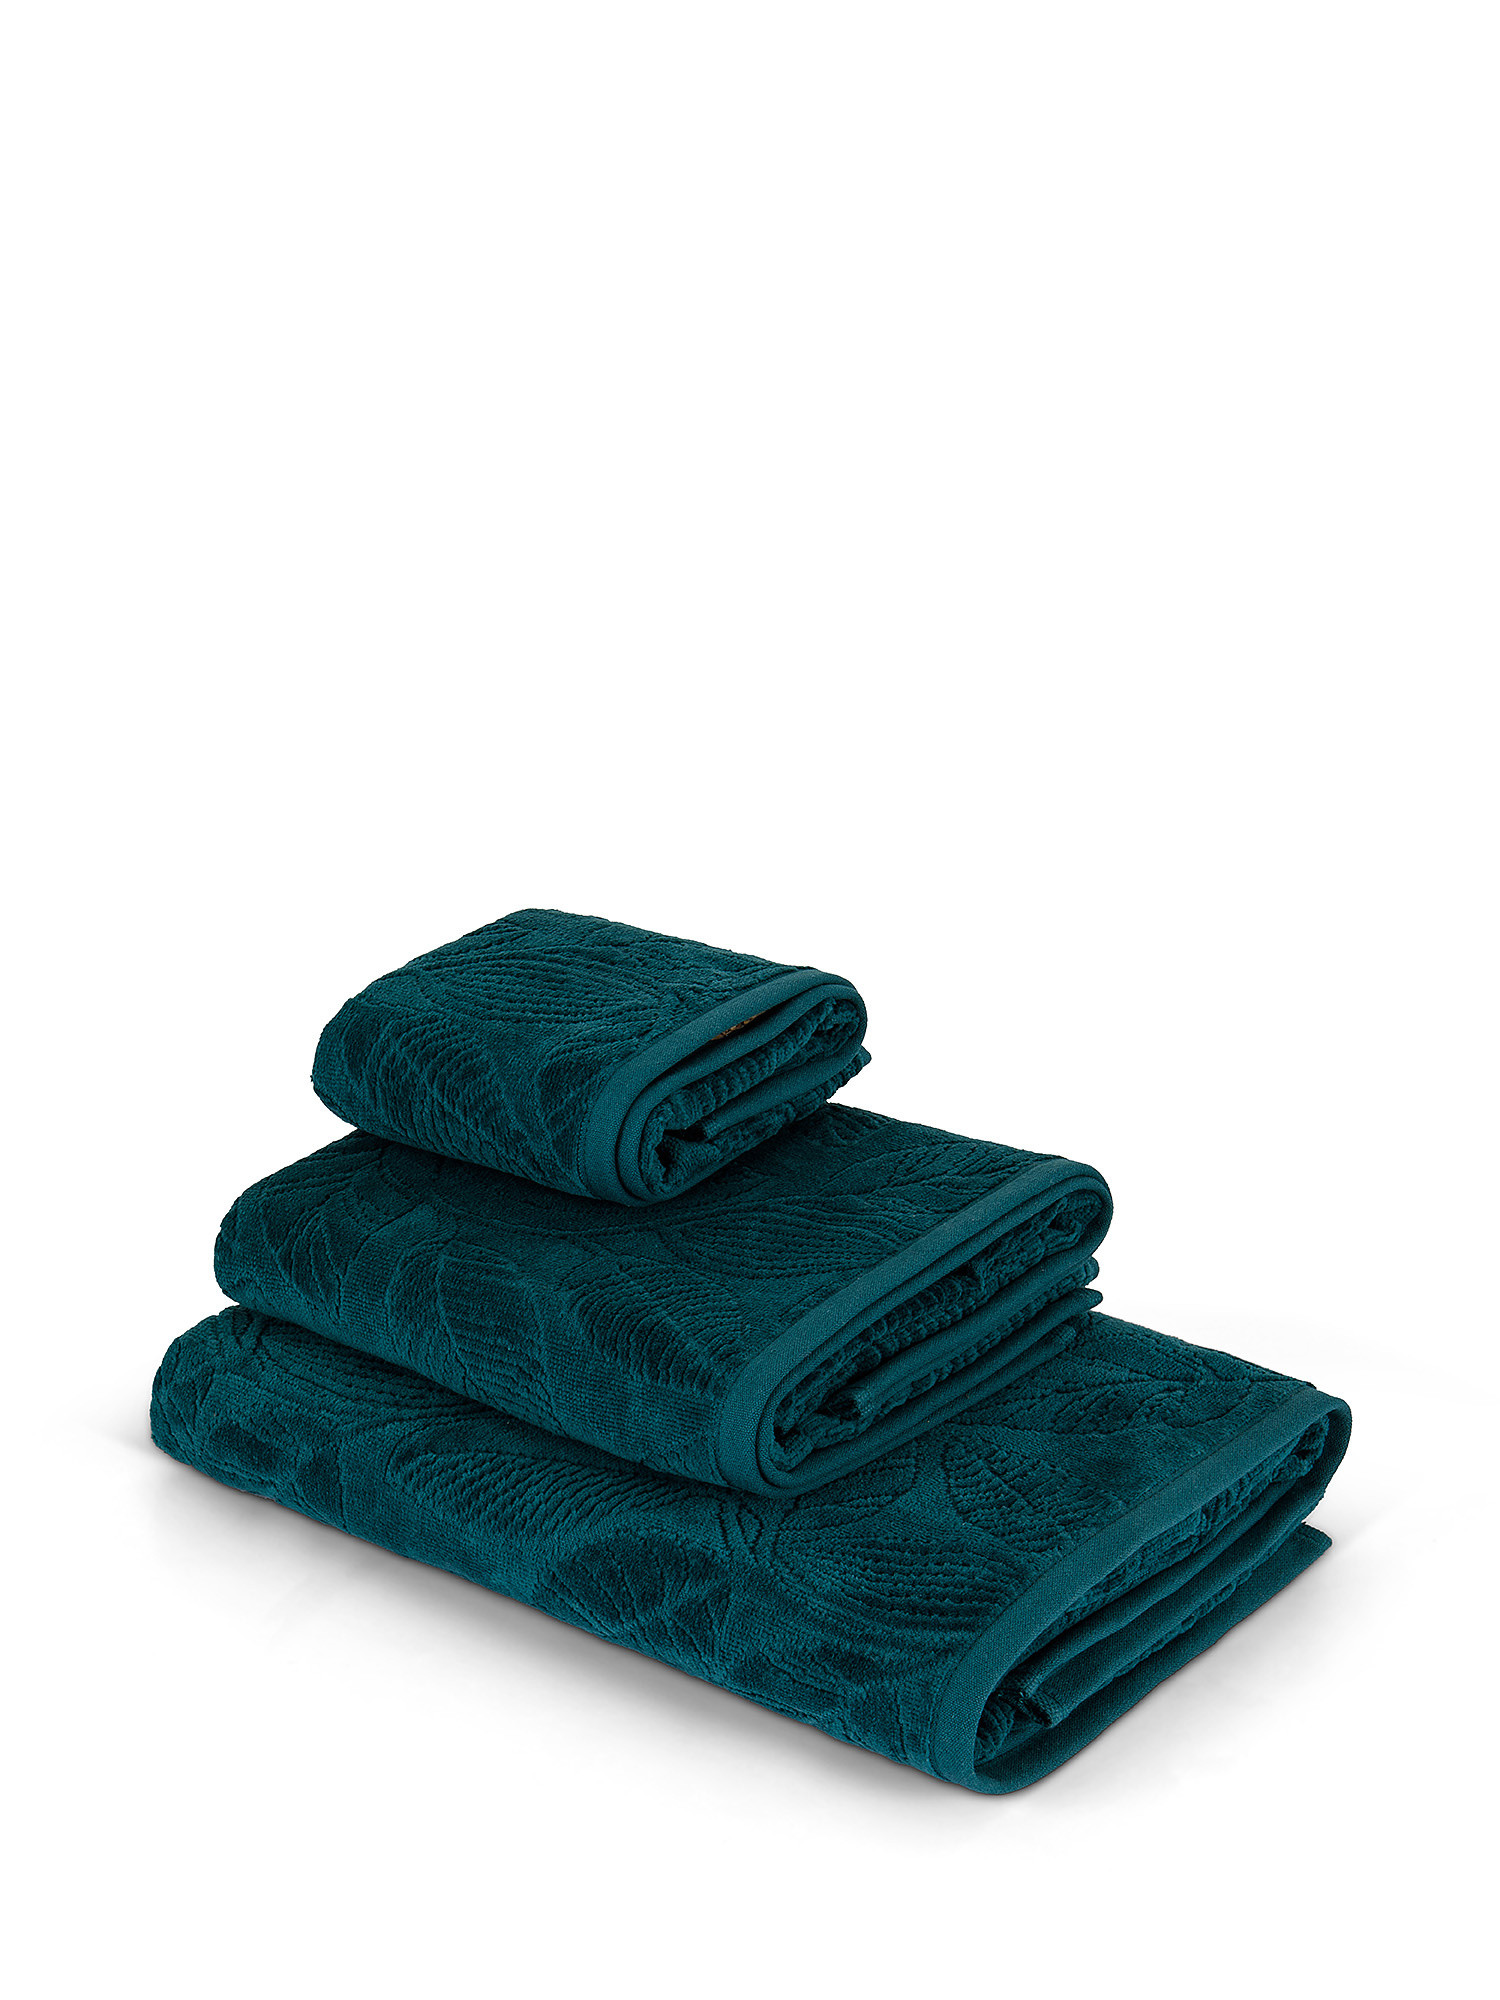 Asciugamano cotone velour motivo a fiori, Verde, large image number 0